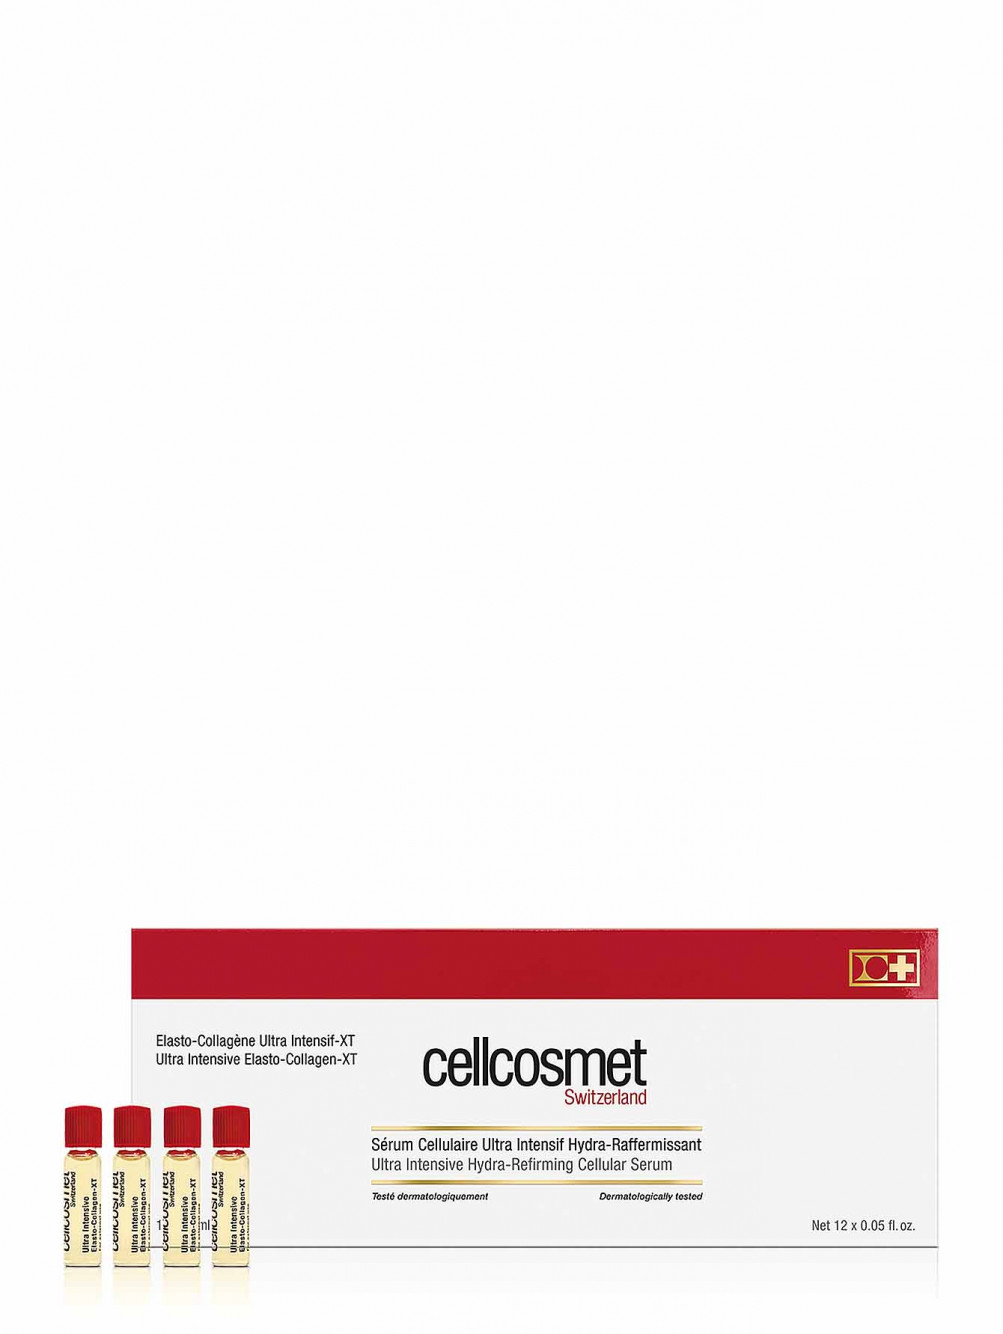  Клеточная сыворотка - Ultra intensive elasto-collagen, 12x1,5ml - Общий вид